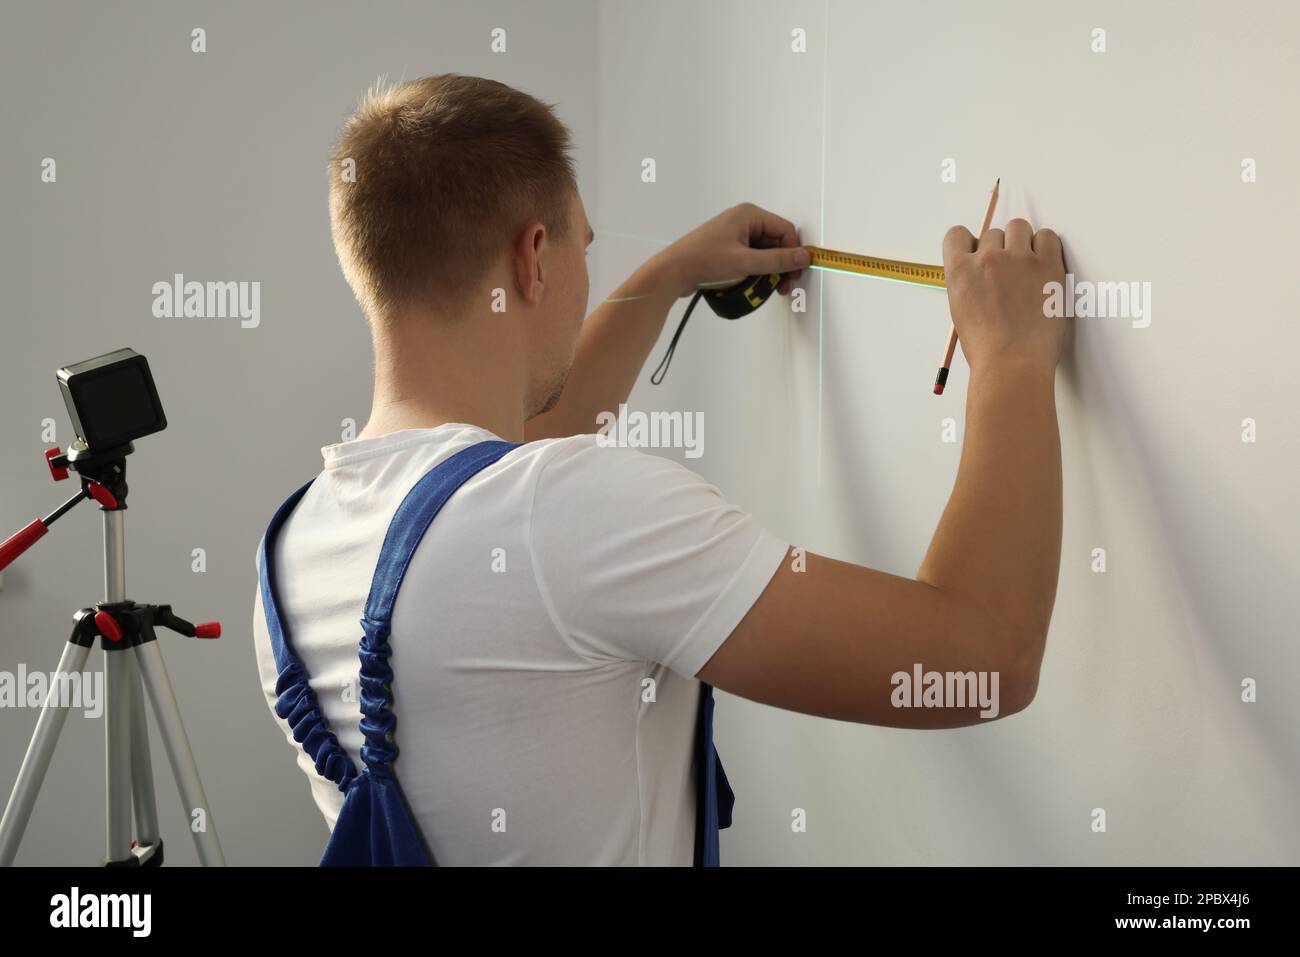 L'employé utilise un niveau laser croisé, un crayon et un ruban pour des  mesures précises sur le mur lumineux, vue arrière Photo Stock - Alamy